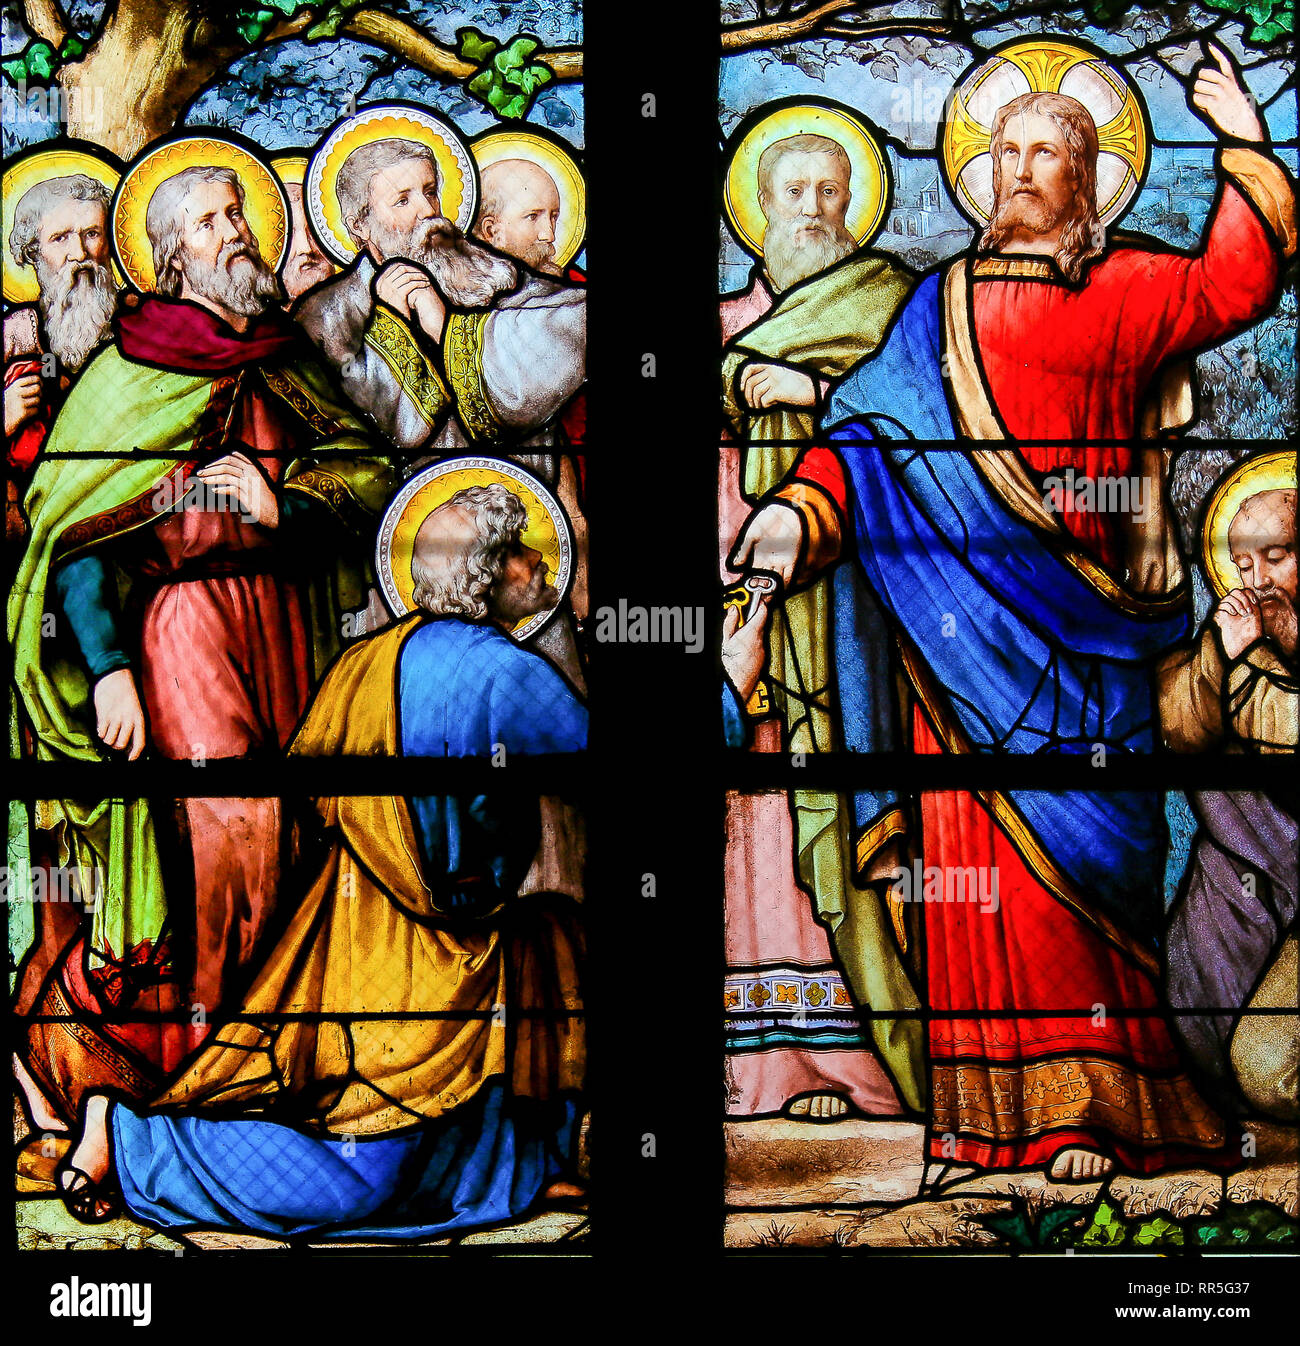 Vitraux dans l'église de Saint Severin, Quartier Latin, Paris, France, représentant Jésus remettant les clés du royaume des cieux à Saint Pe Banque D'Images